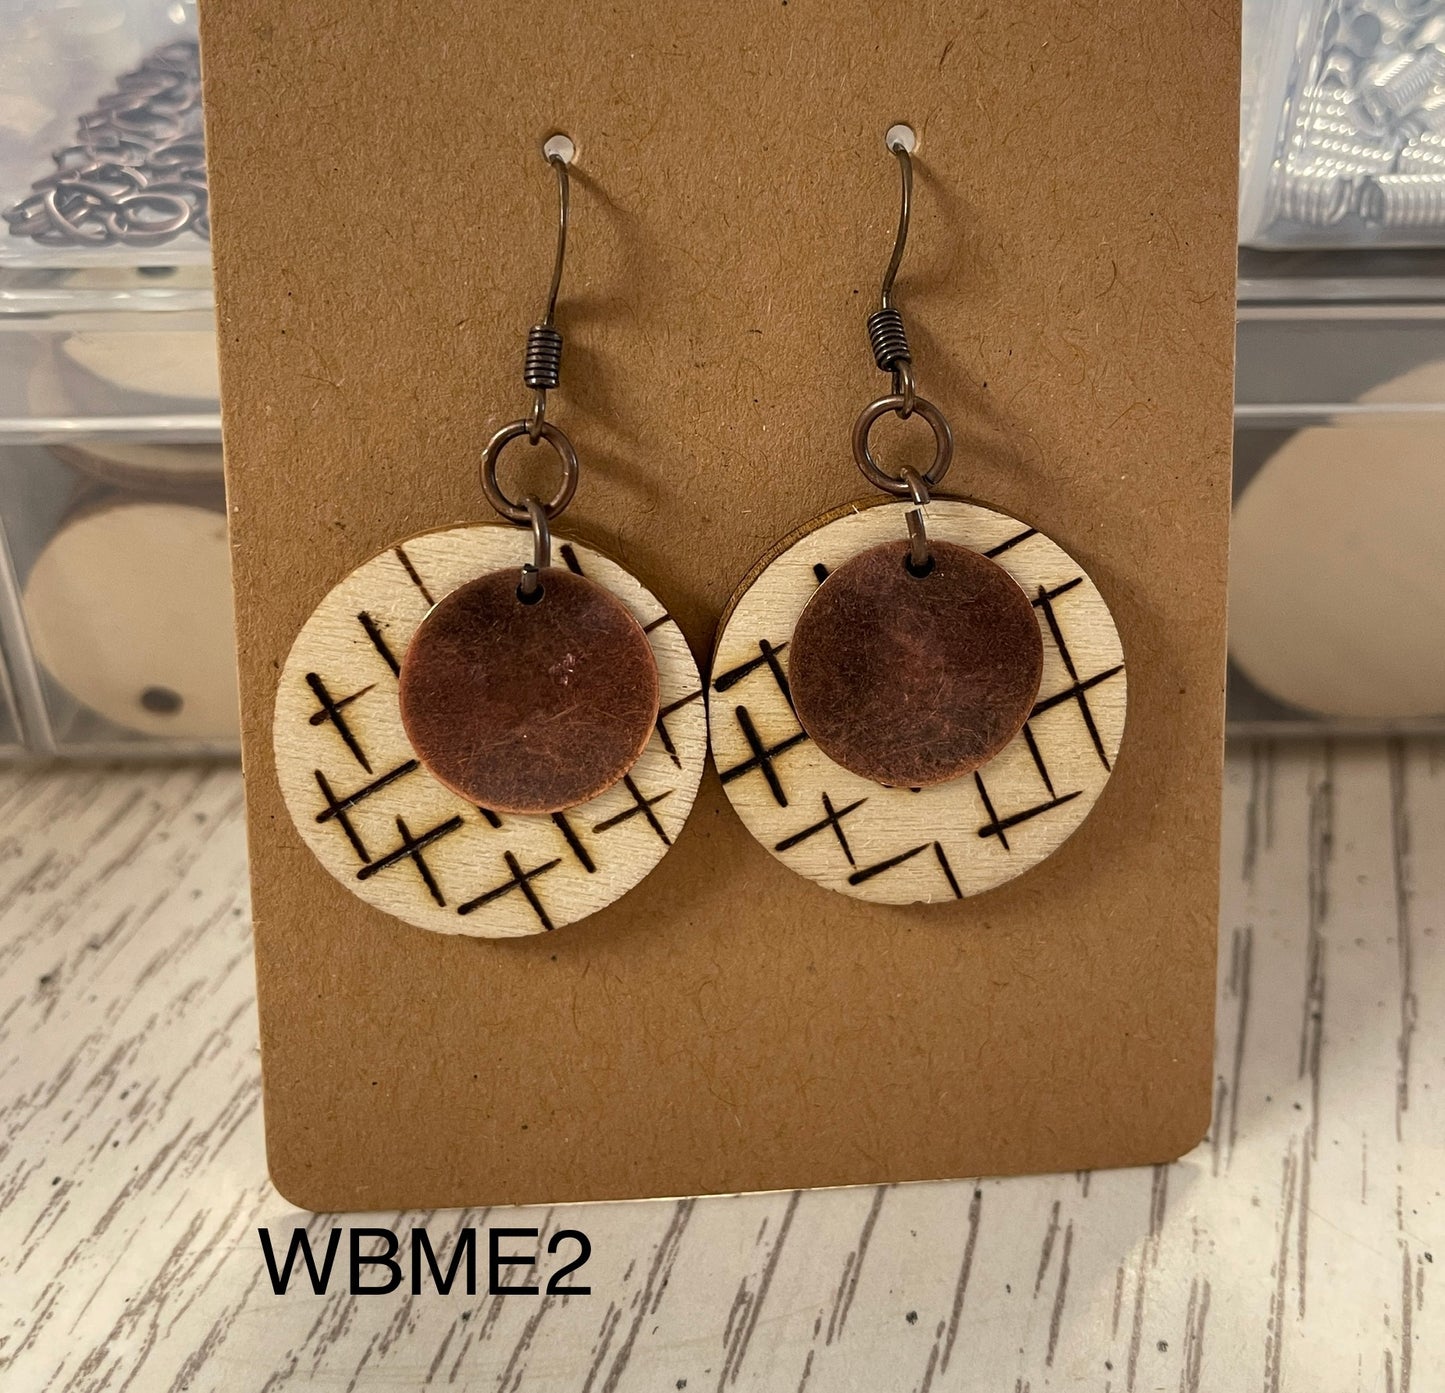 Wood burn crisscross with copper charm earrings WBME2